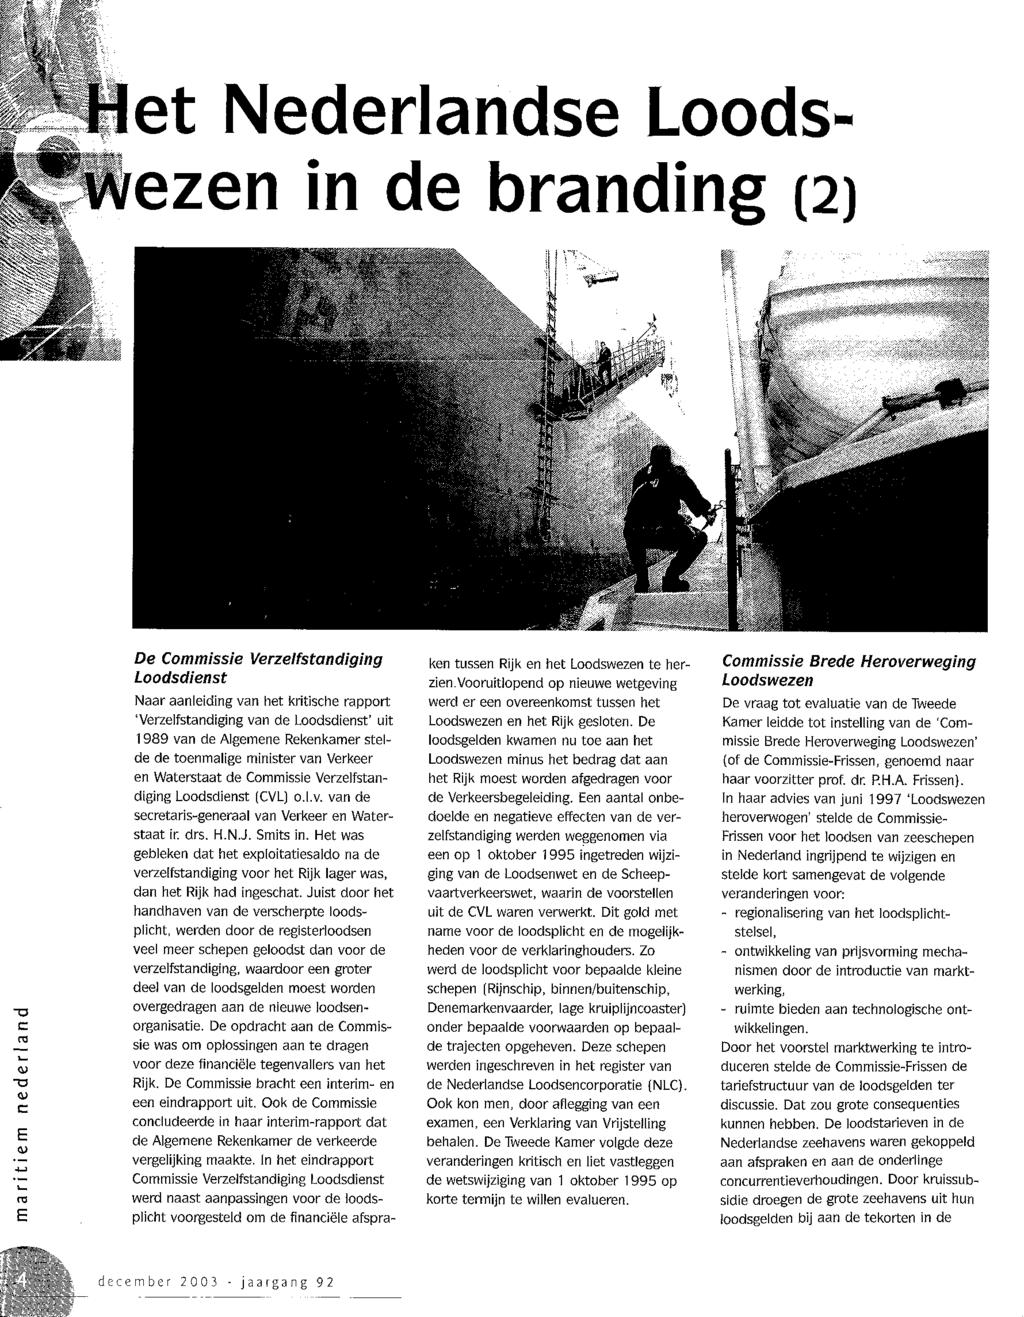 Het Nederlandse Loodsezen in de branding (2) De Commissie Verzelfstandiging Loodsdienst Naar aanleiding van het kritische rapport Verzelfstandiging van de Loodsdienst uit 1989 van de Algemene